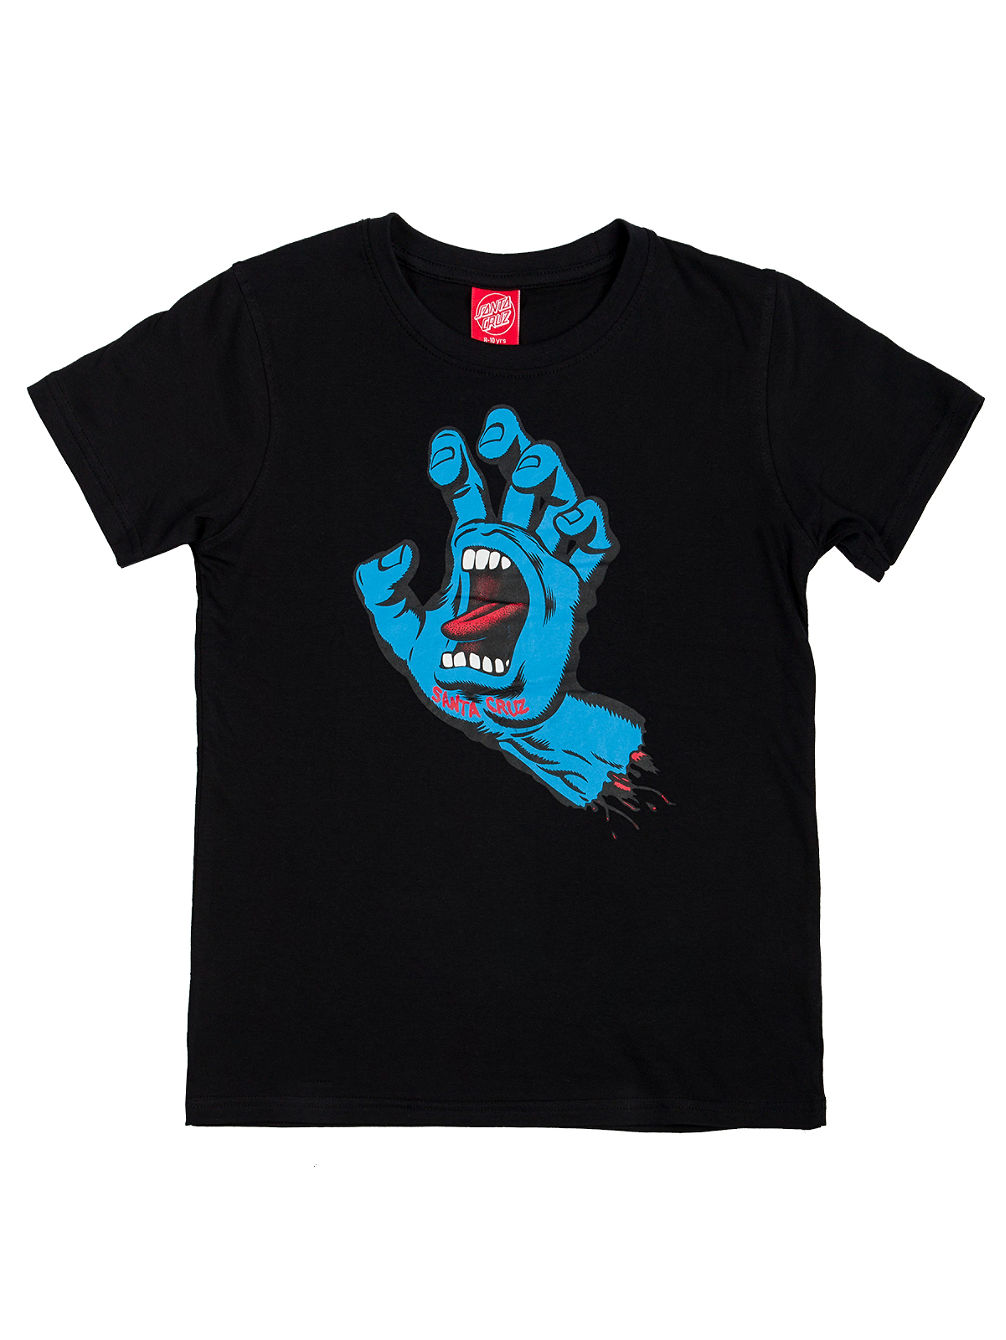 Screaming Hand T-Shirt